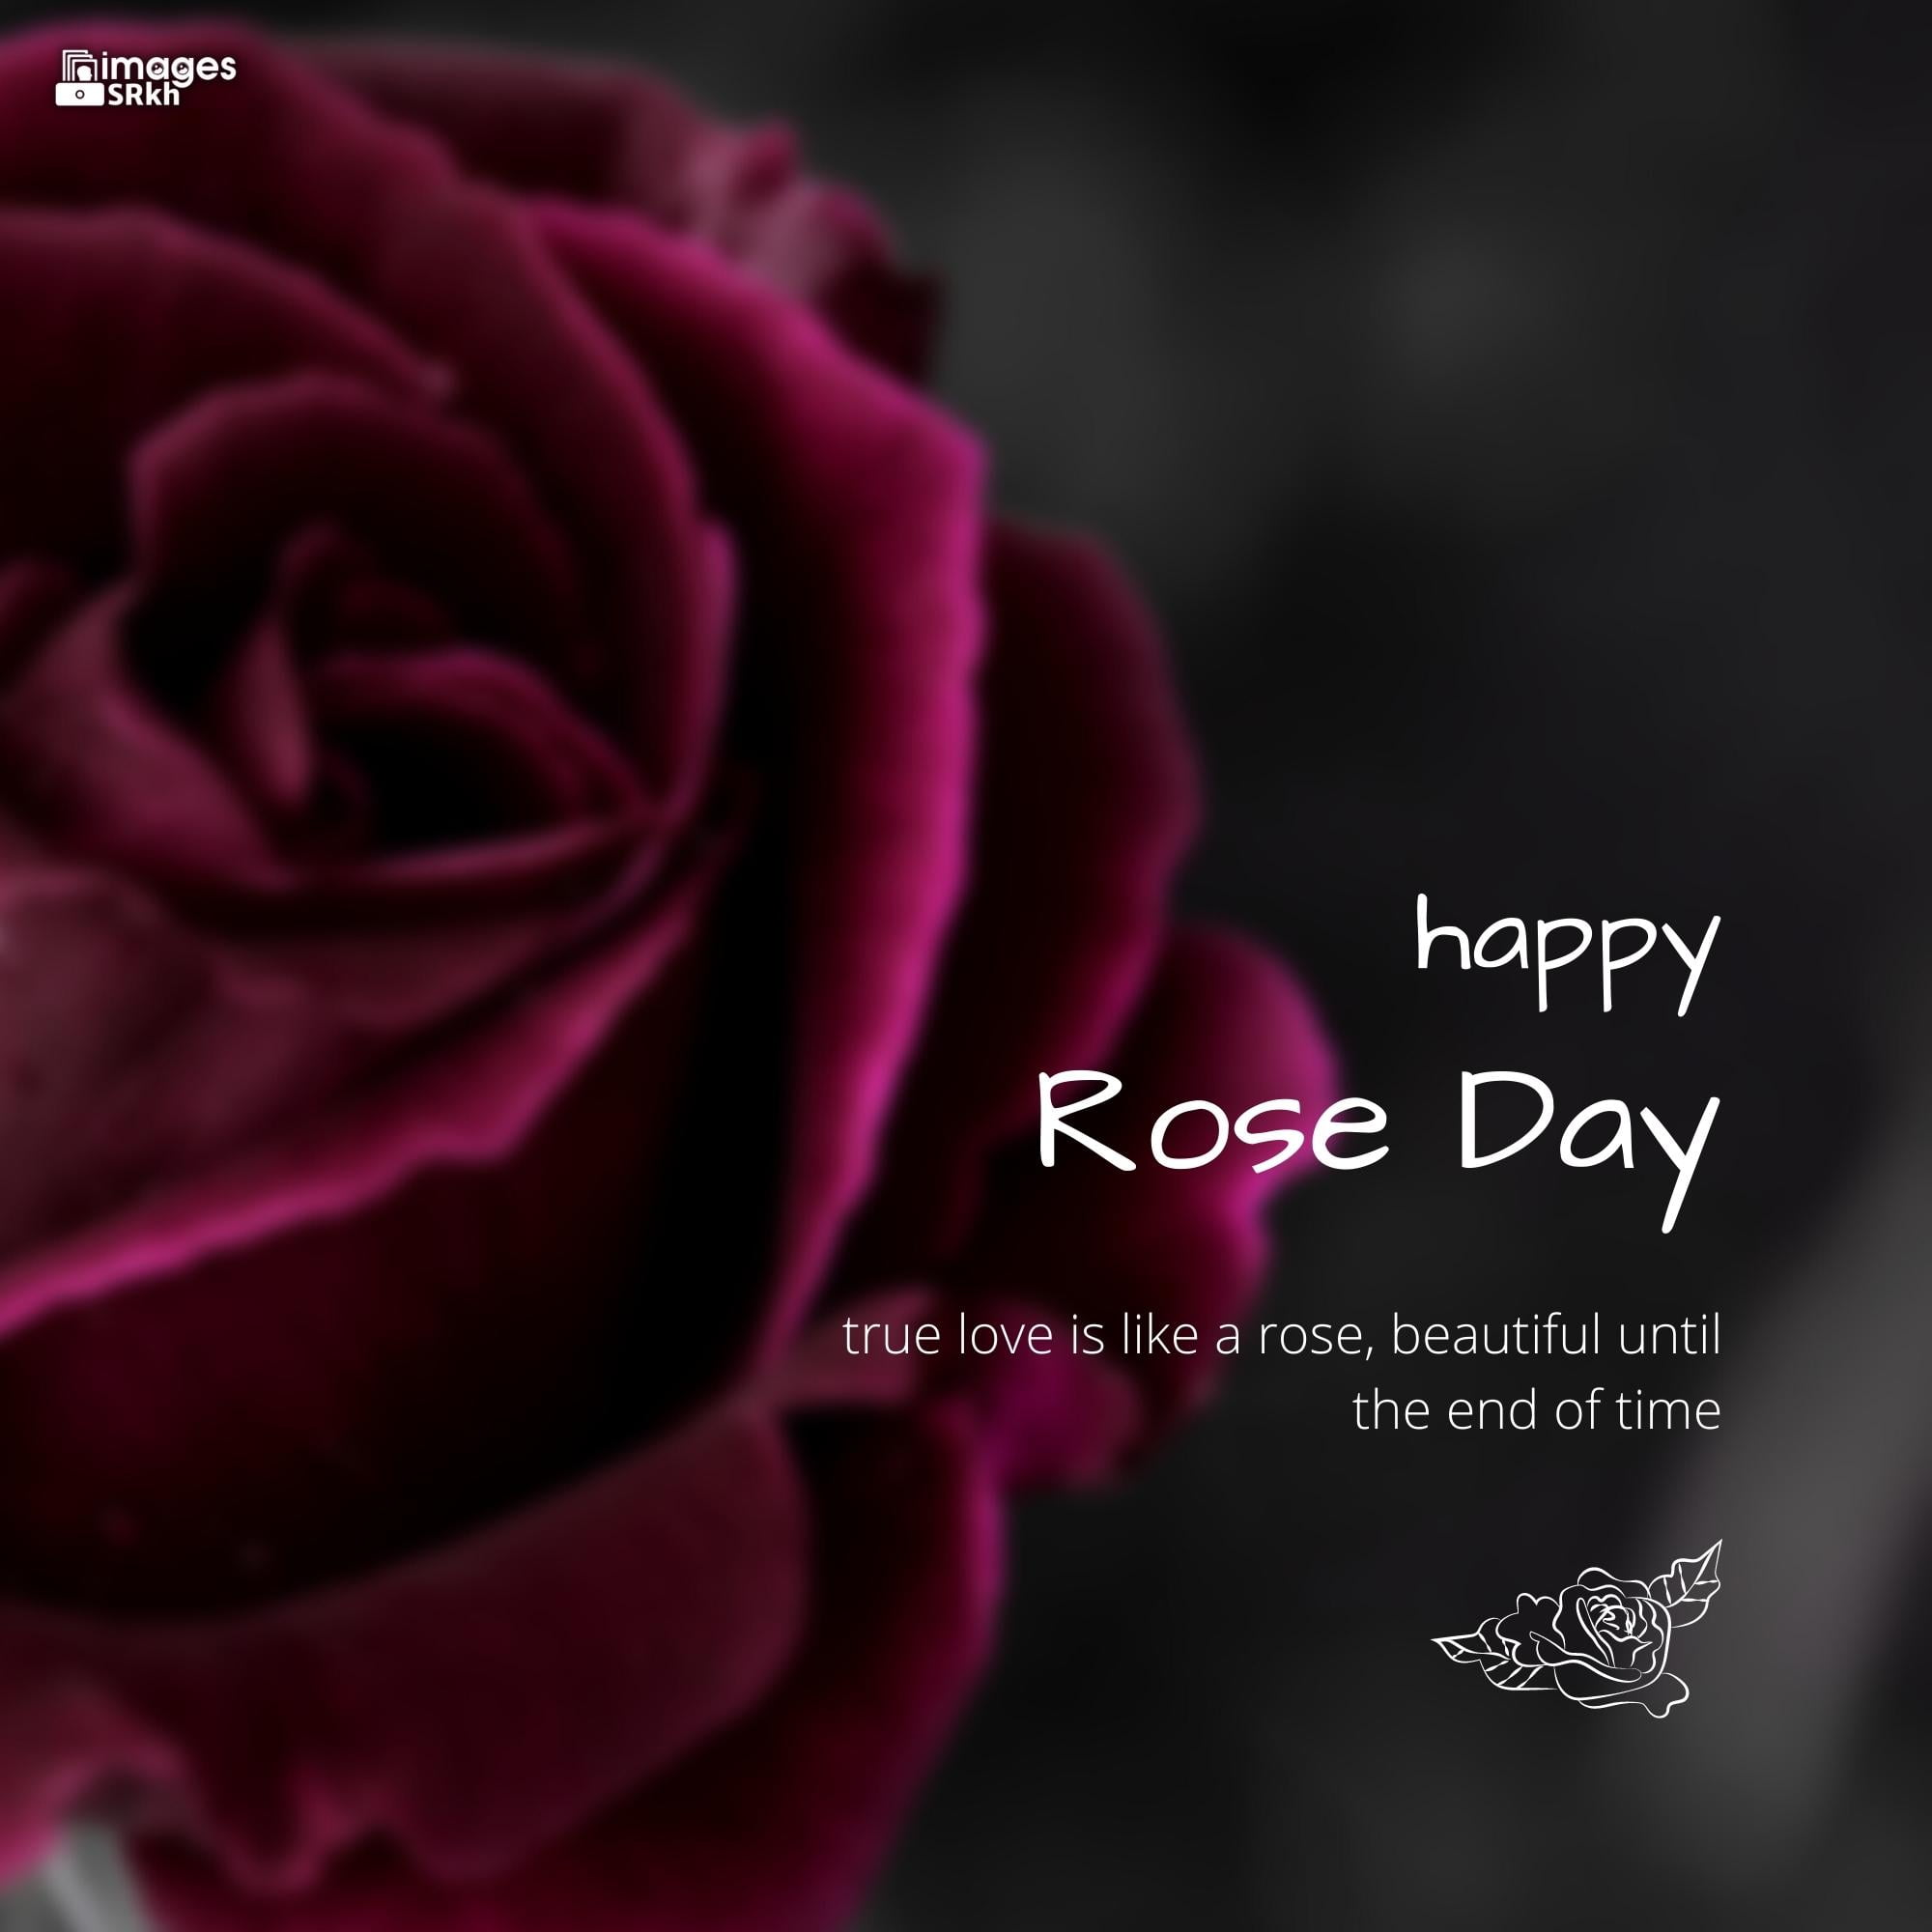 Rose Day Wishing Image Hd Download (3)